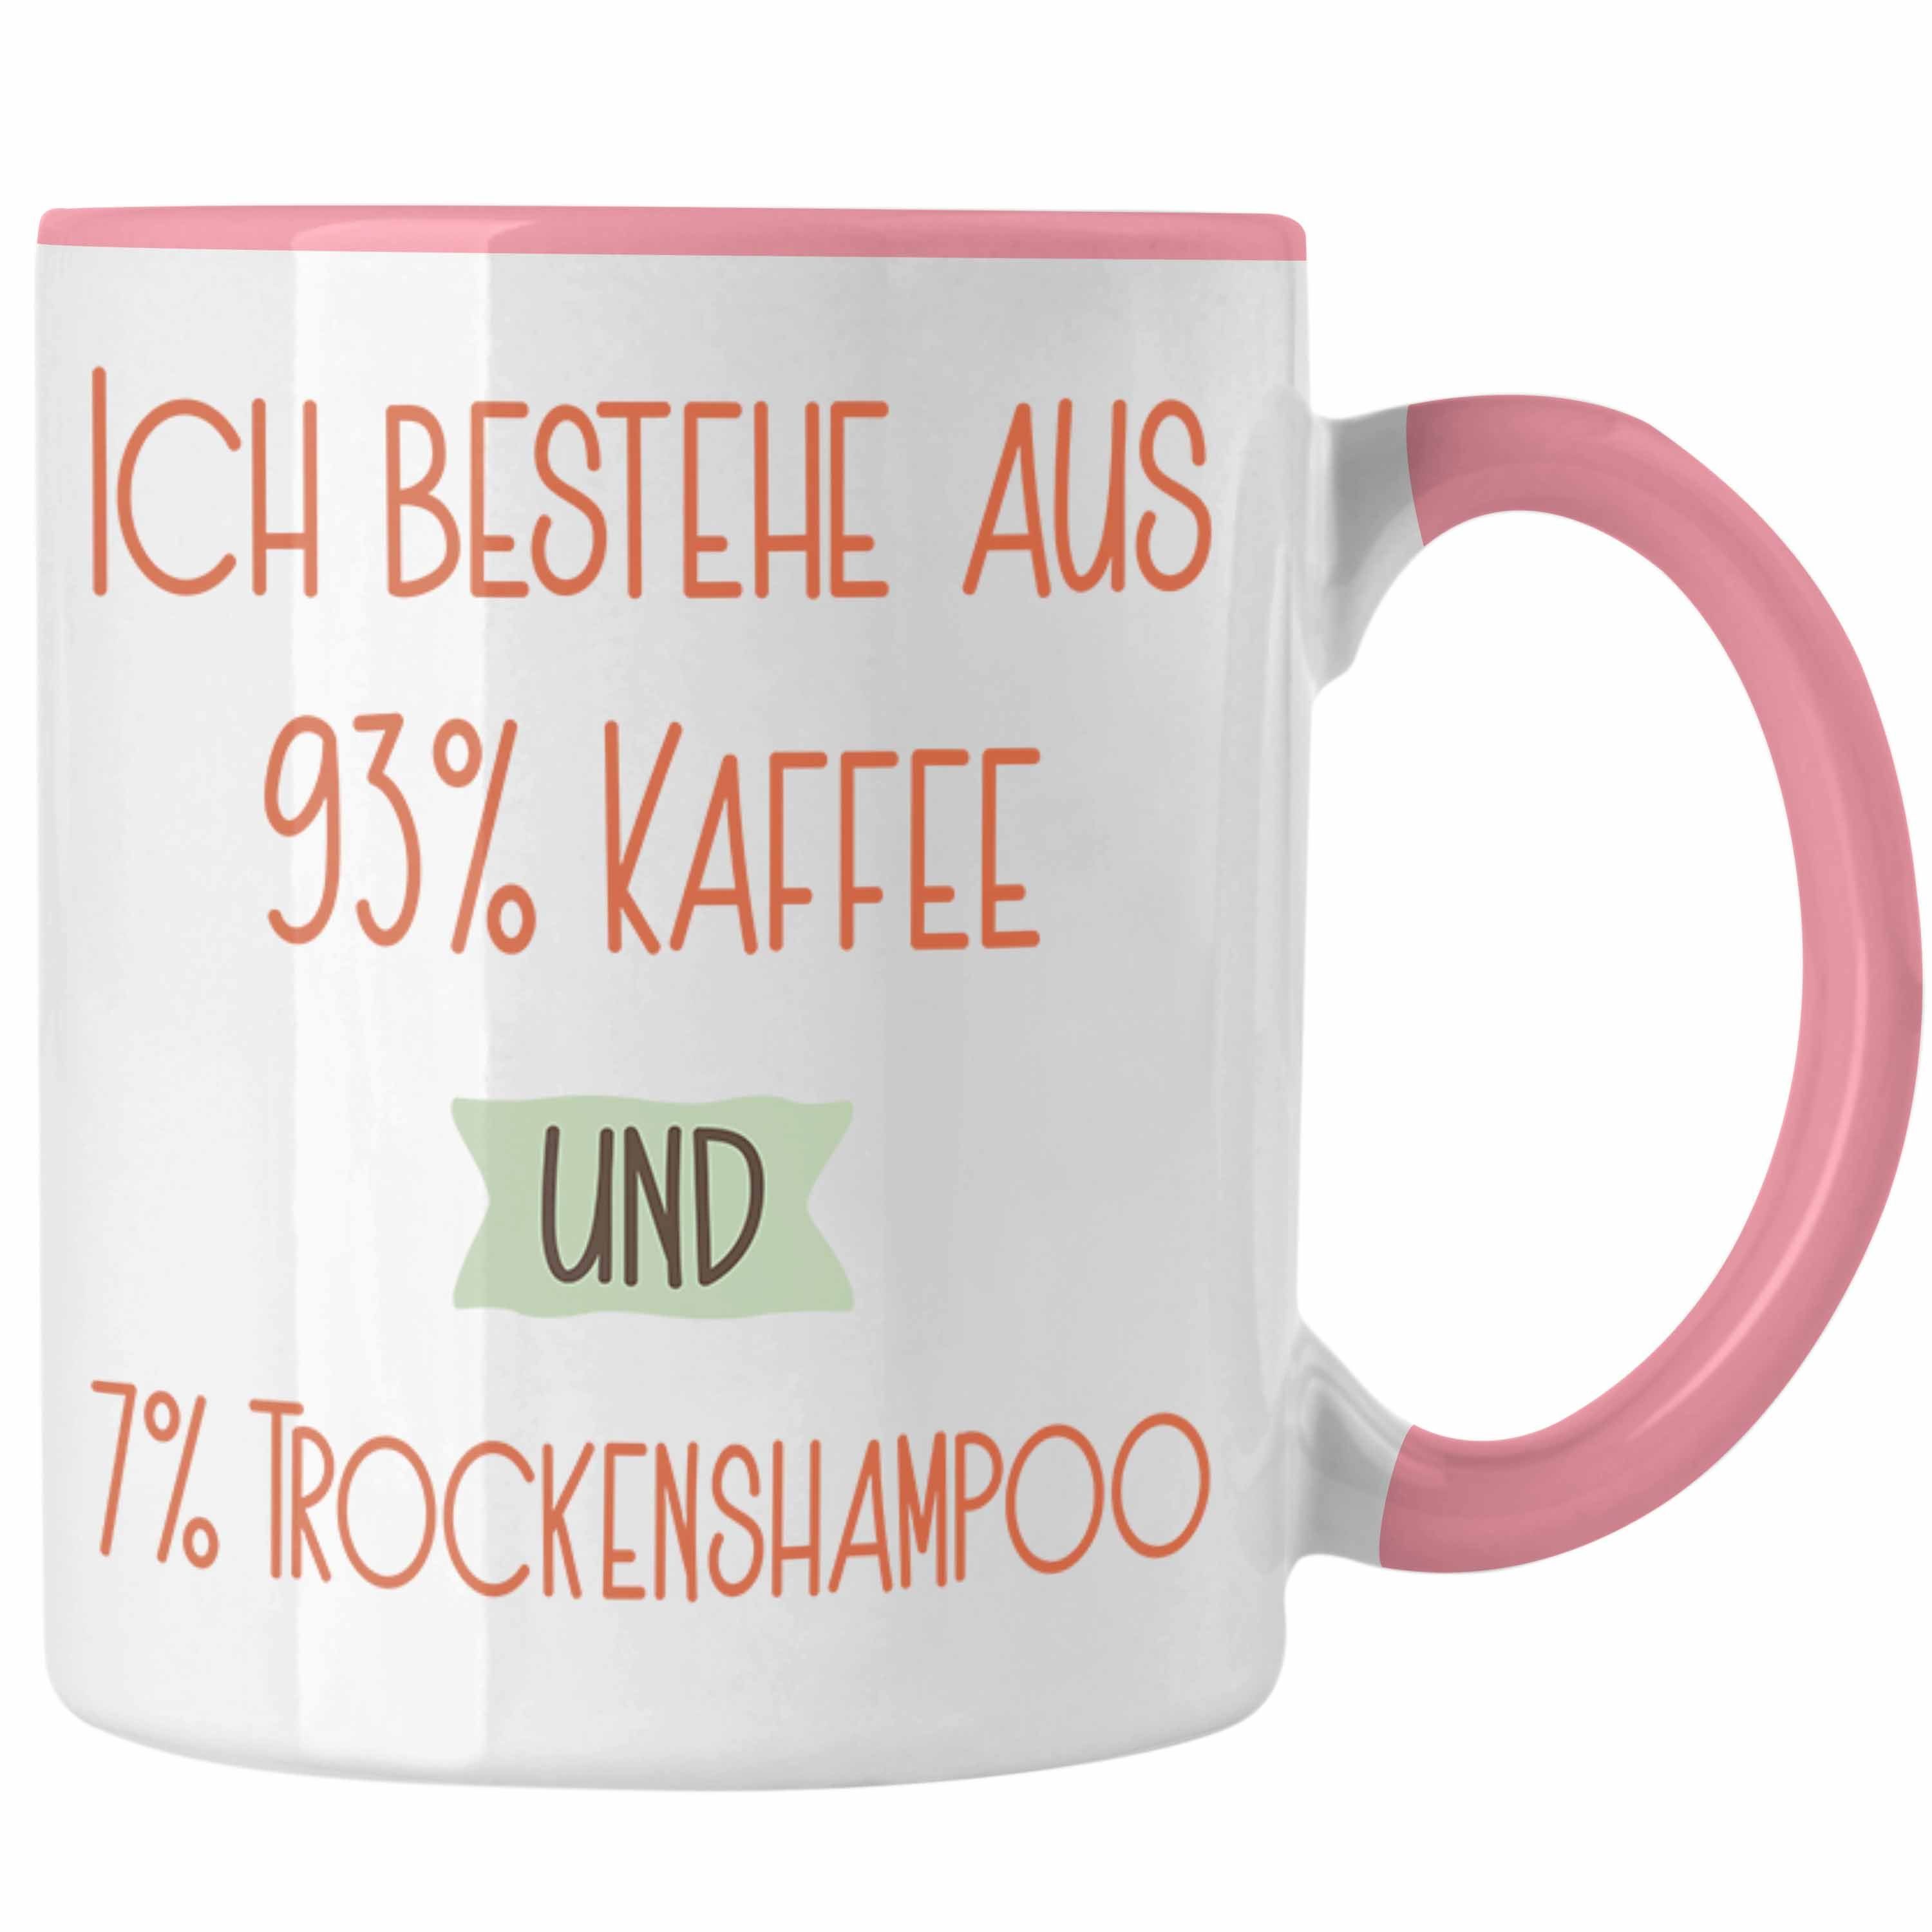 Trendation Tasse 93% Kaffee und 7% Trockenshampoo Tasse Geschenk Lustiger Spruch Für Ko Rosa | Teetassen